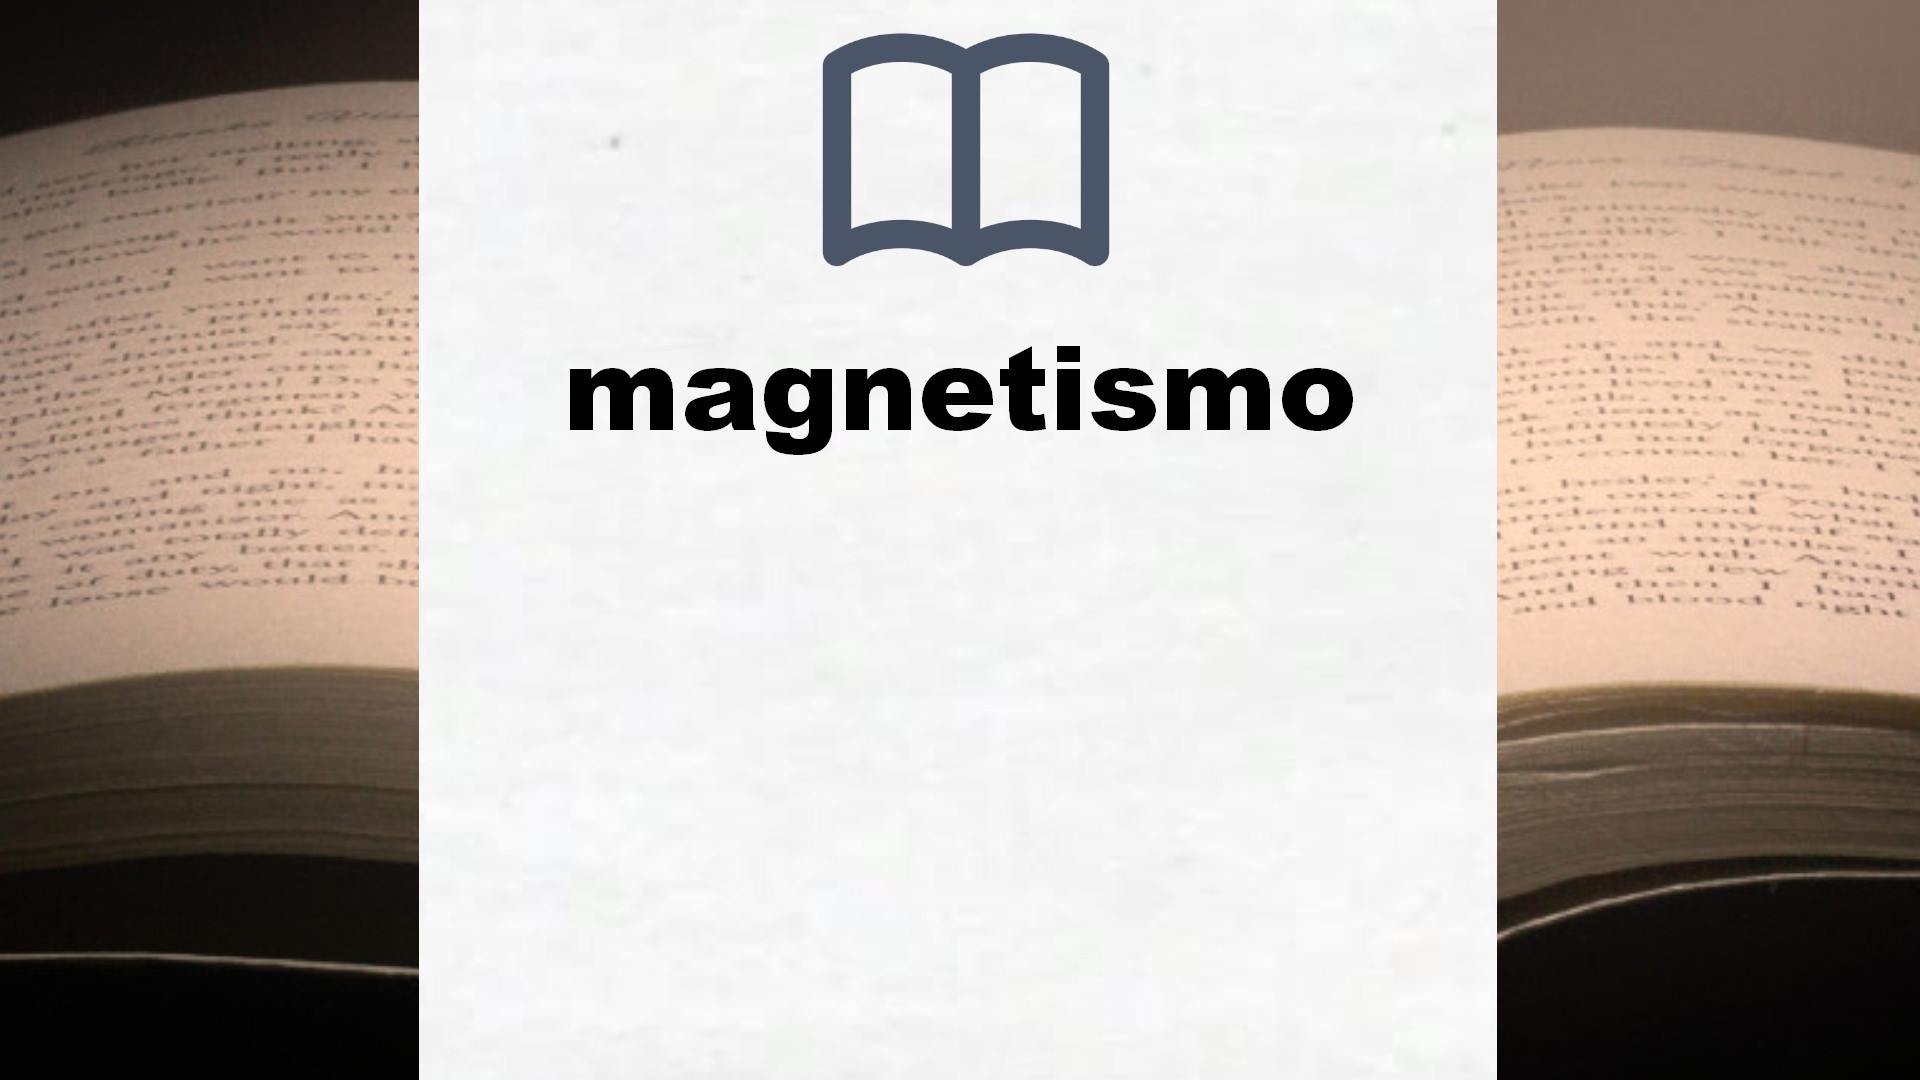 Libros sobre magnetismo